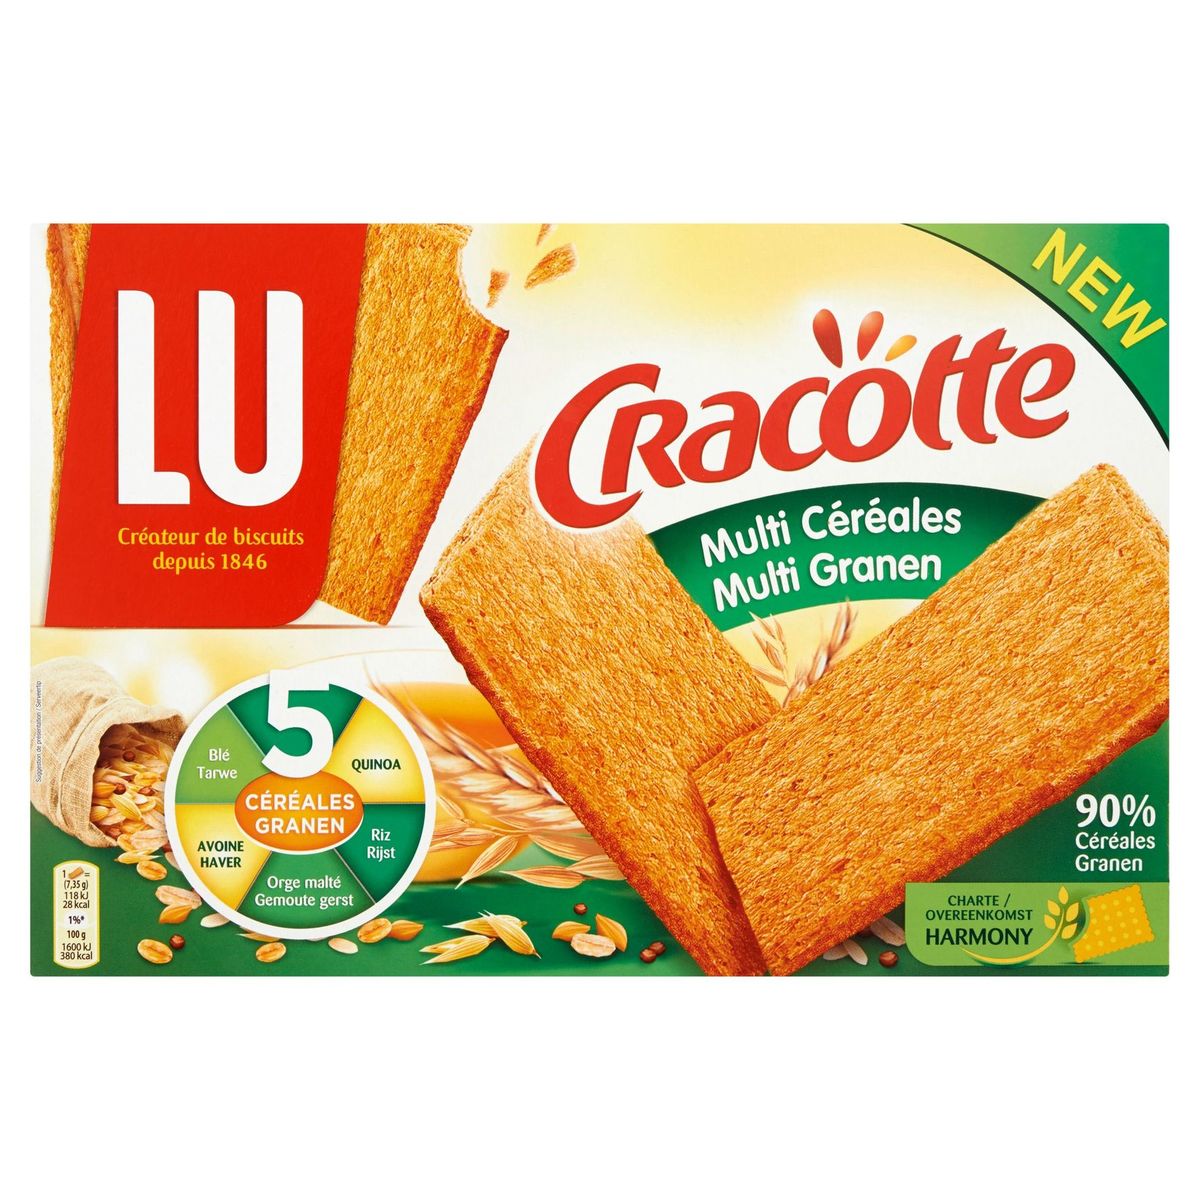 LU Cracotte Multi-Céréales 250 g